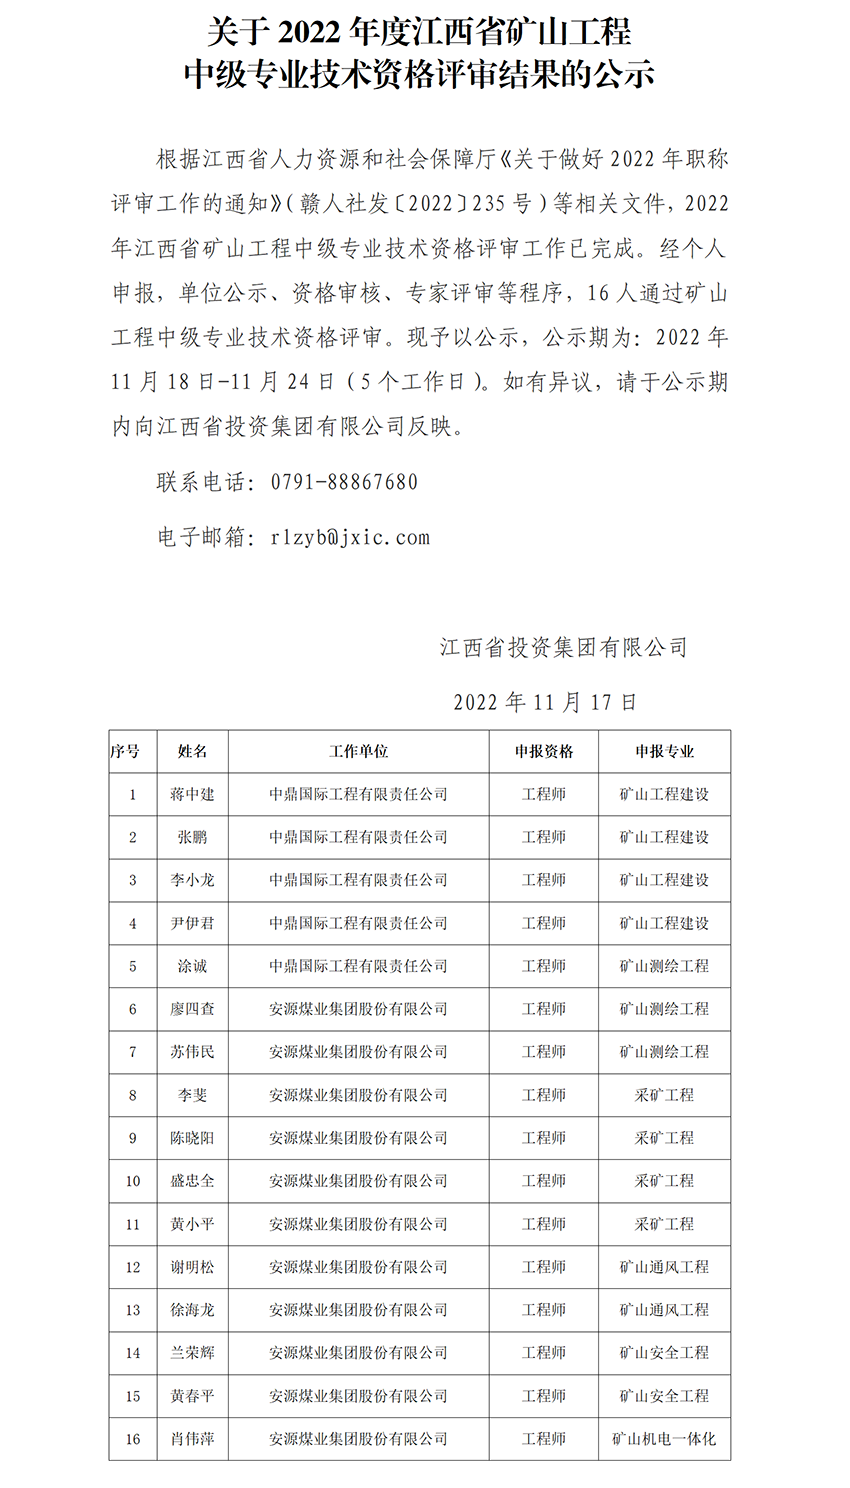 2022年江西省矿山工程中高级专业技术资格评审通过人员公示_02.png